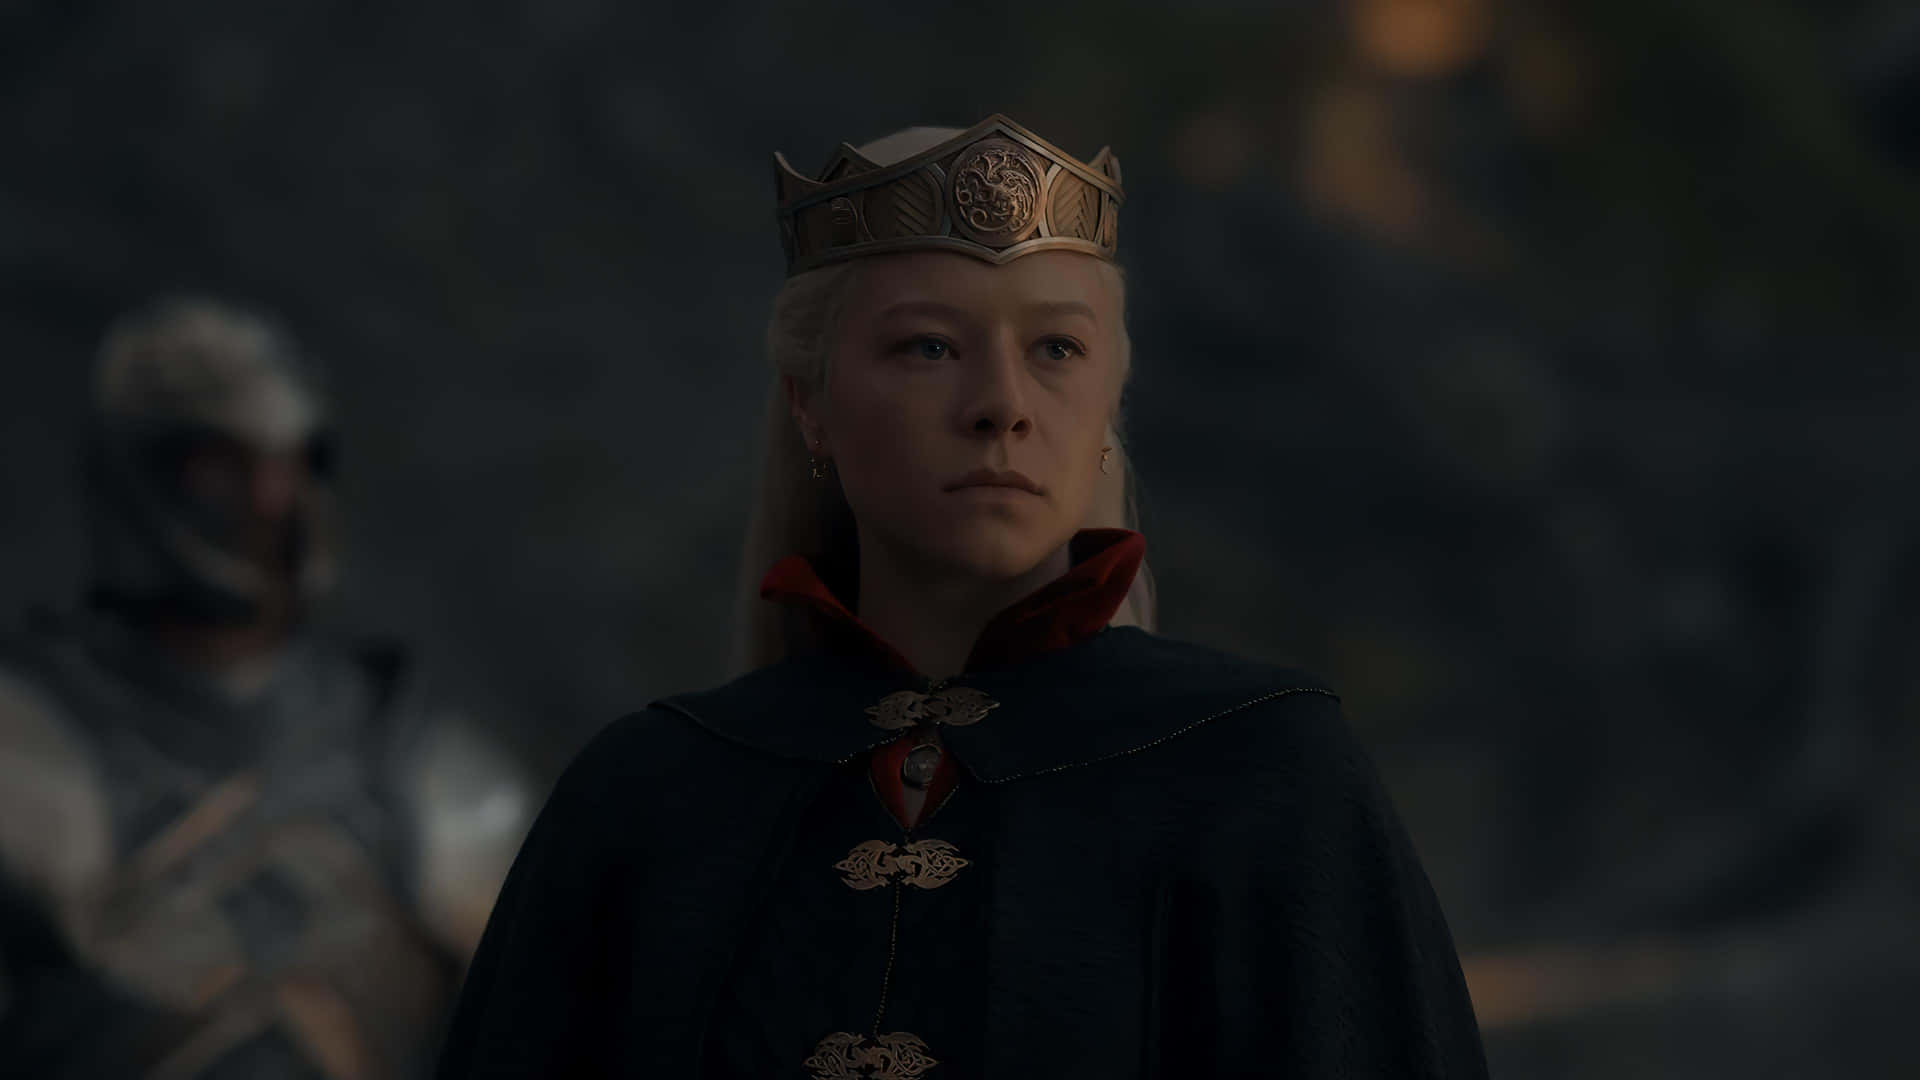 Rhaenyra Targaryen Wearing Crown Dark Wallpaper